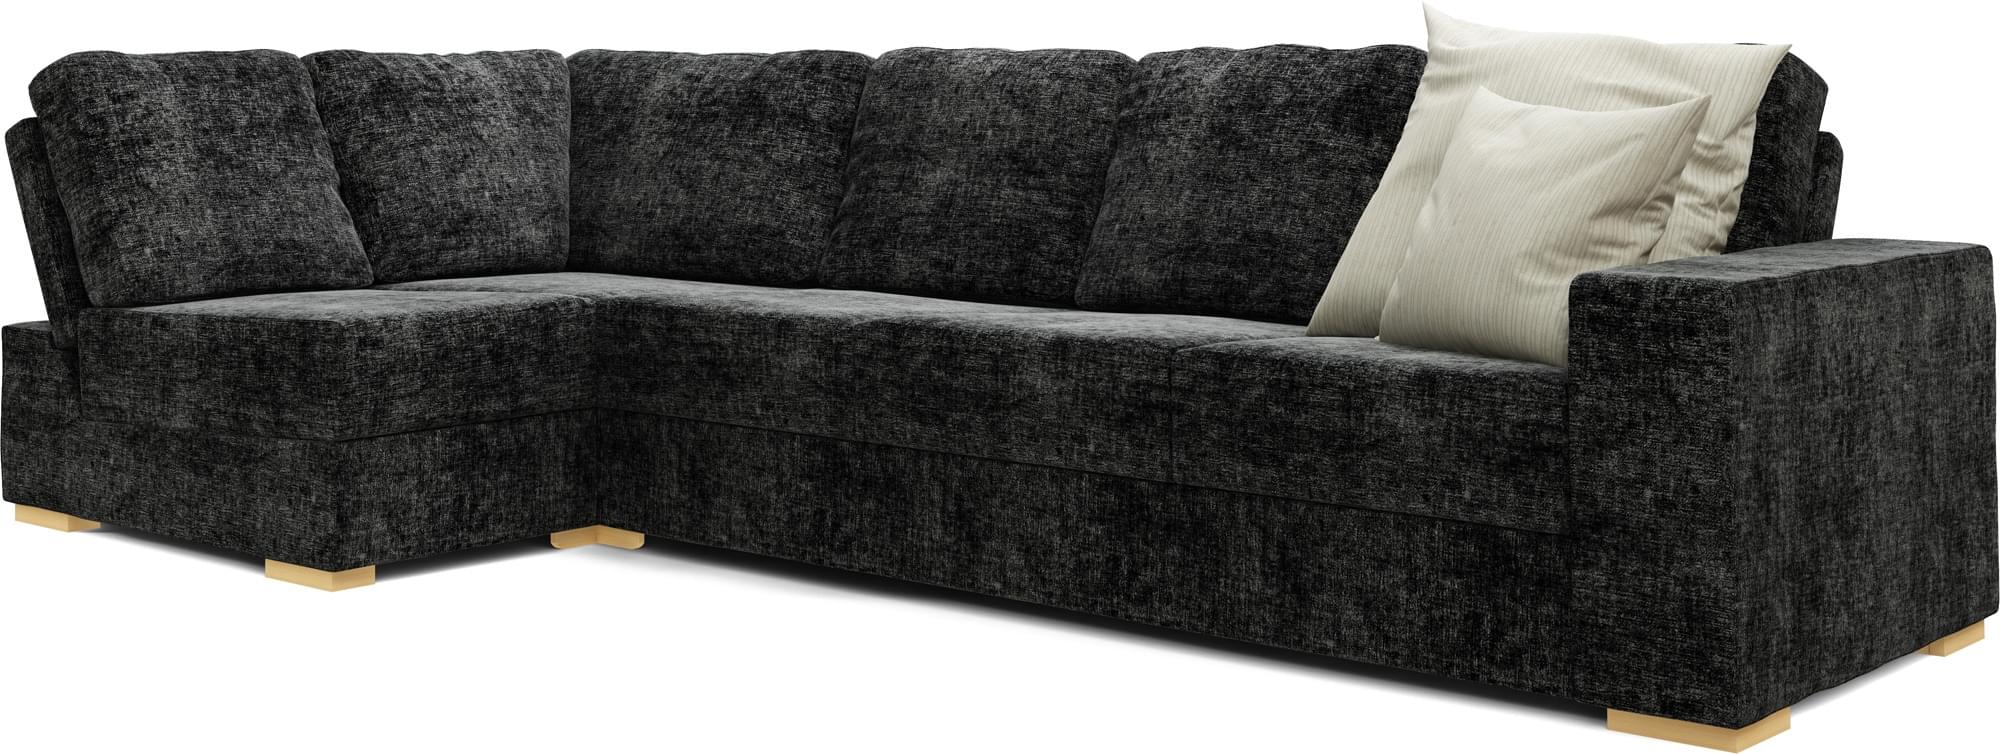 Lear Armless 4X2 Double Sofa Bed